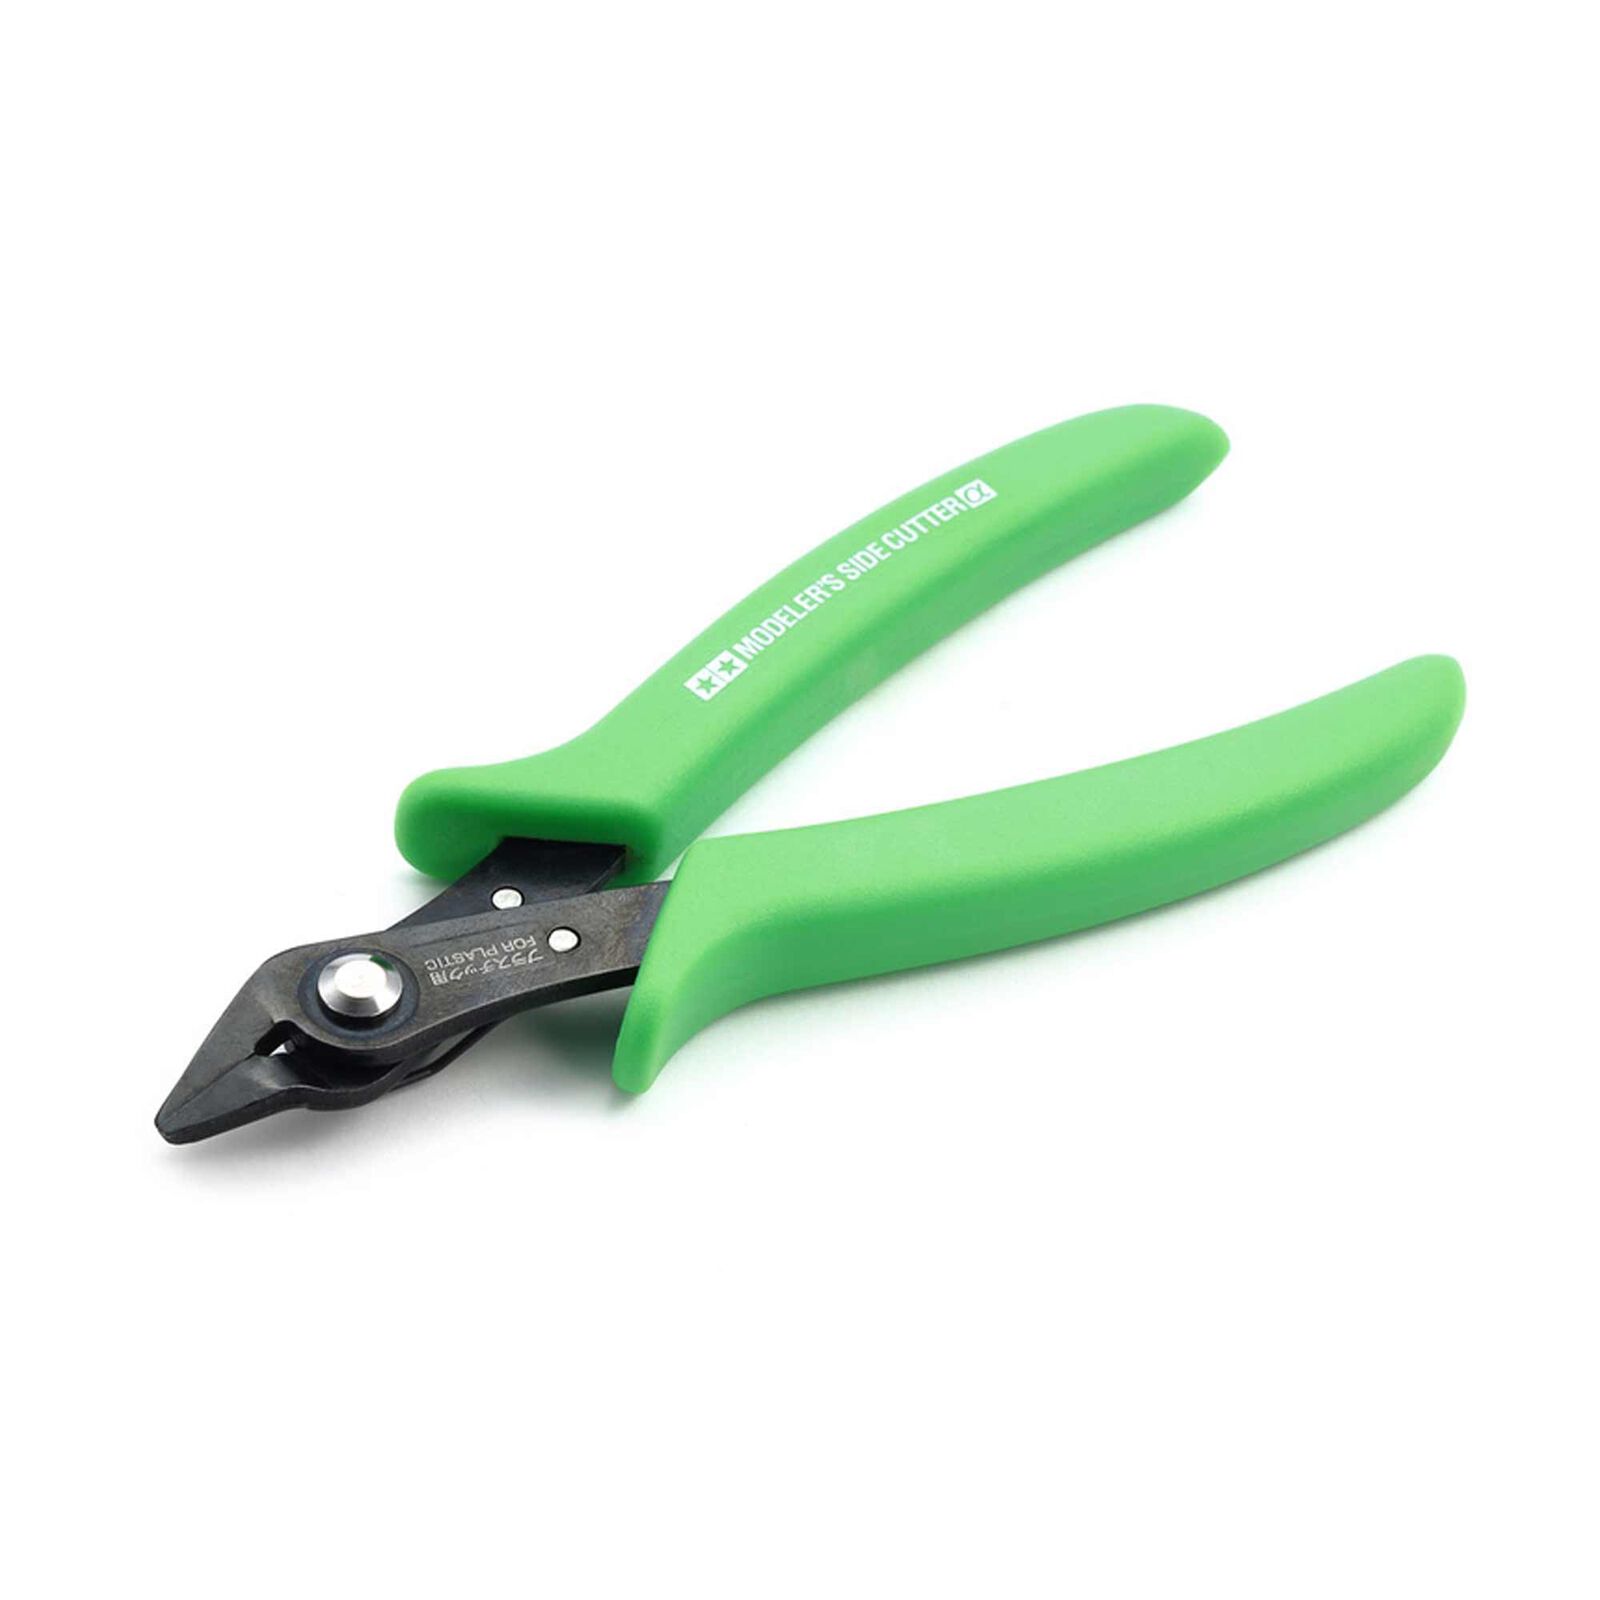 Modeler's Side Cutter, Fluorescent Green